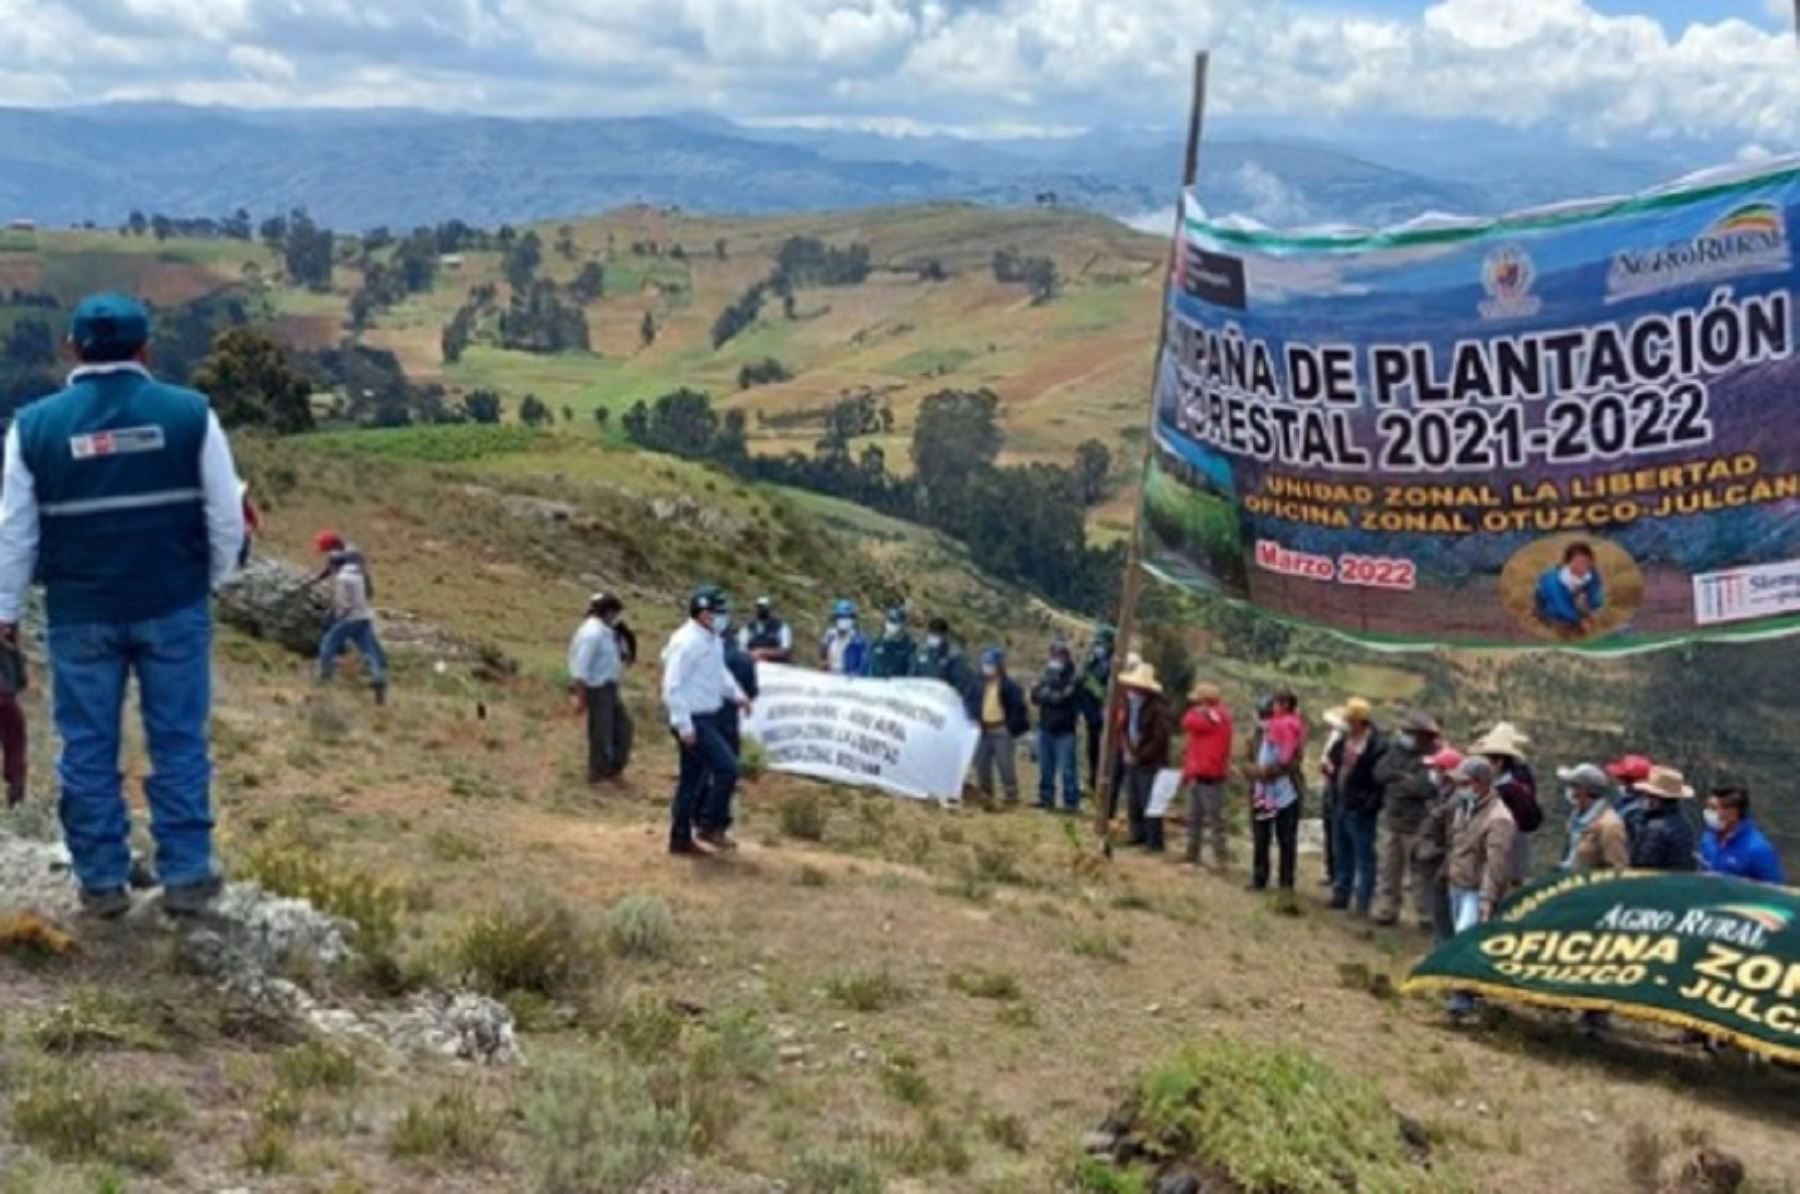 En el marco de la implementación de la segunda reforma agraria, impulsada por el Gobierno Nacional, el Ministerio de Desarrollo Agrario, a través del Programa de Desarrollo Productivo Agrario Rural (Agro Rural), instaló 5,000 plantones forestales en el caserío Pachín Bajo, en el distrito de Otuzco, región La Libertad.